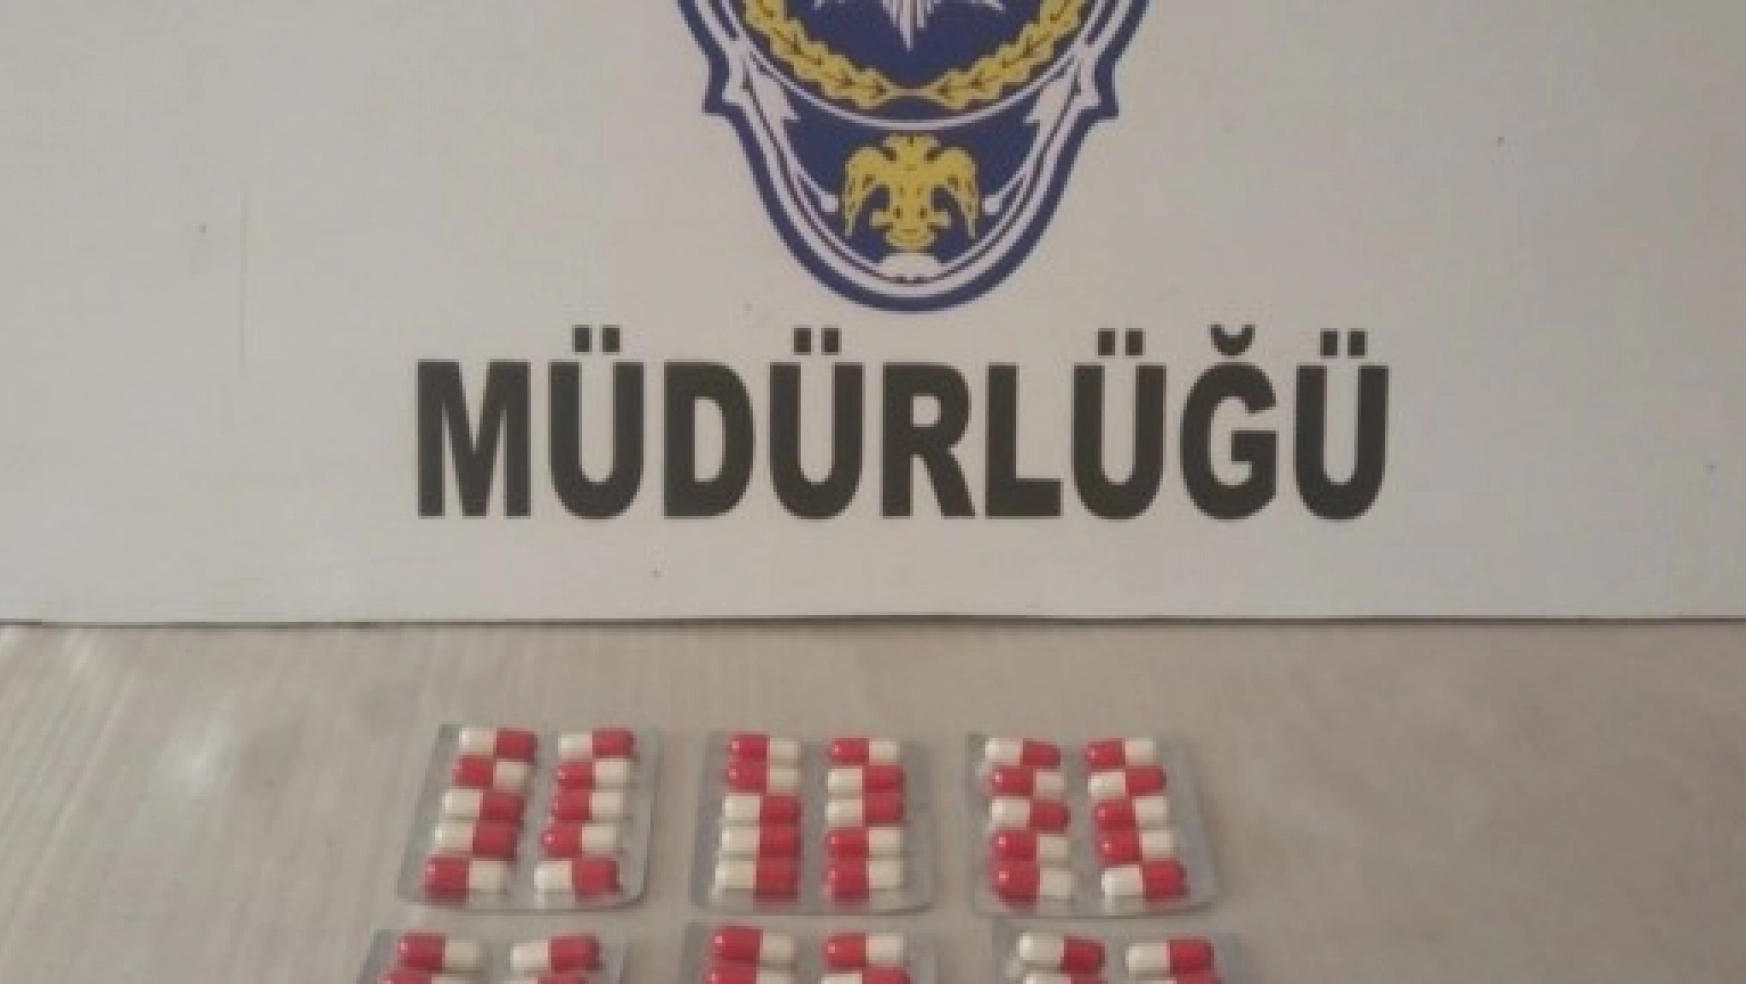 Malatya'da Uyuşturucu Operasyonu